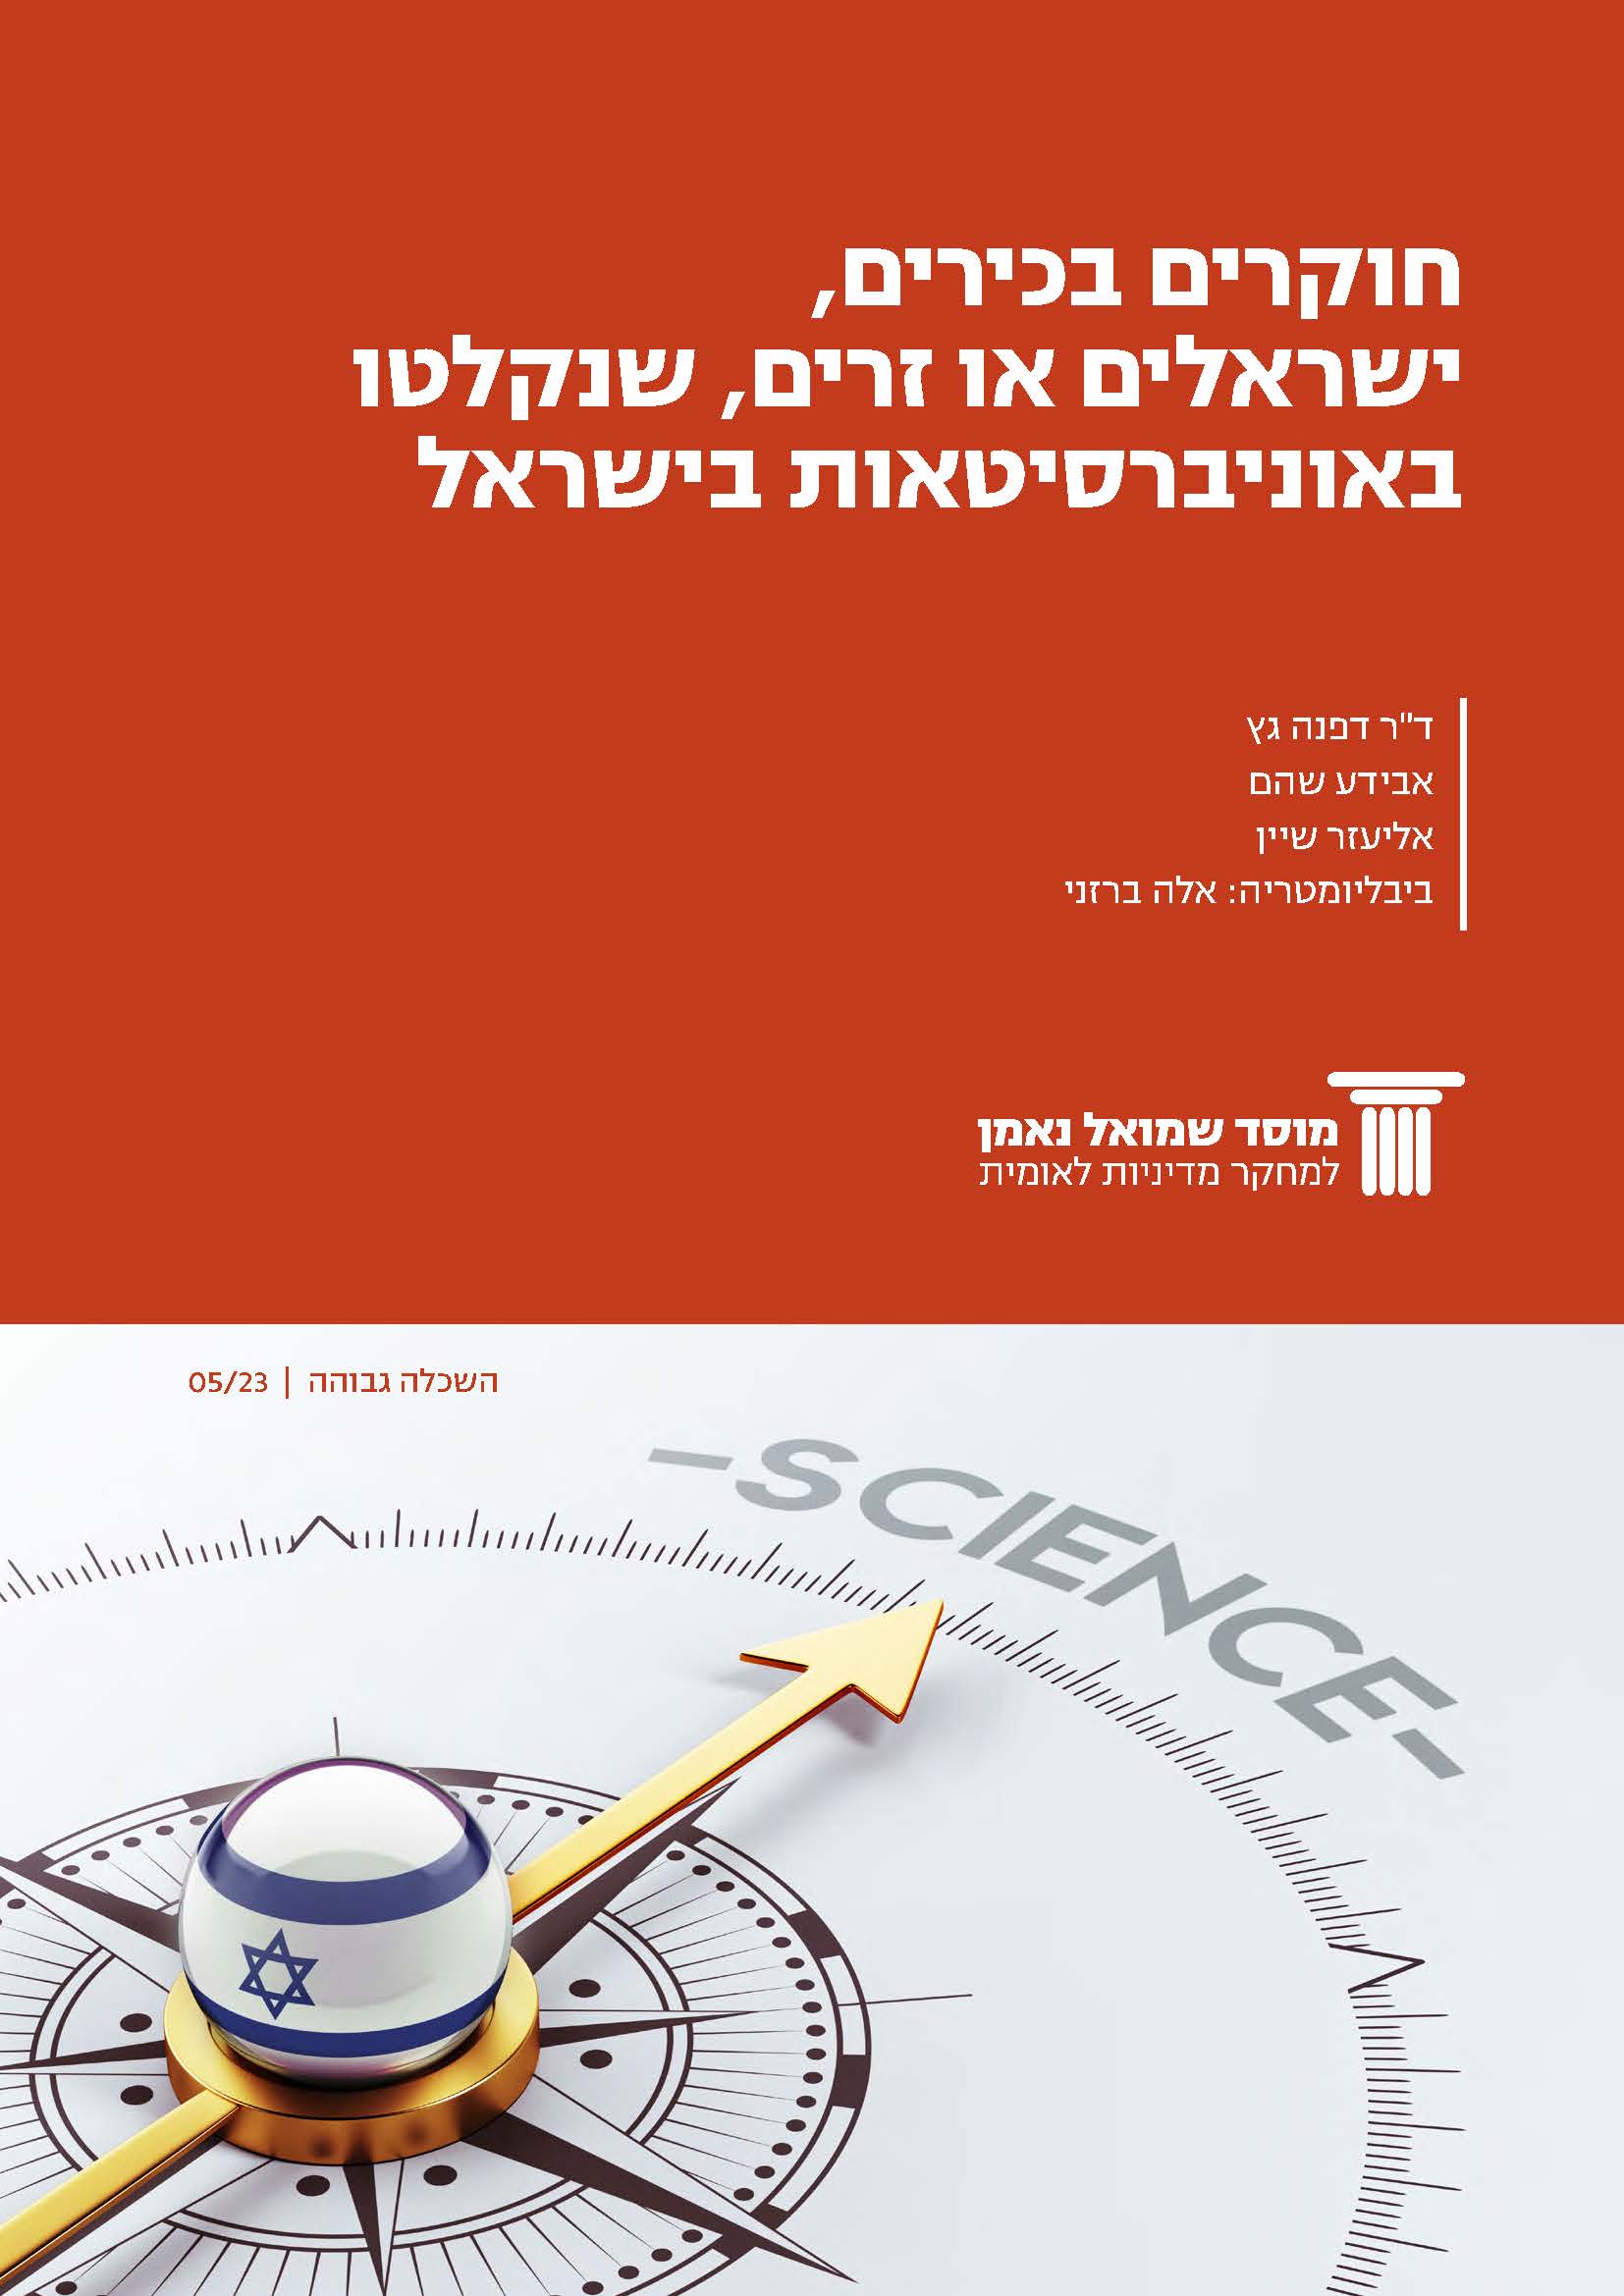 חוקרים בכירים, ישראלים או זרים, שנקלטו באוניברסיטאות בישראל